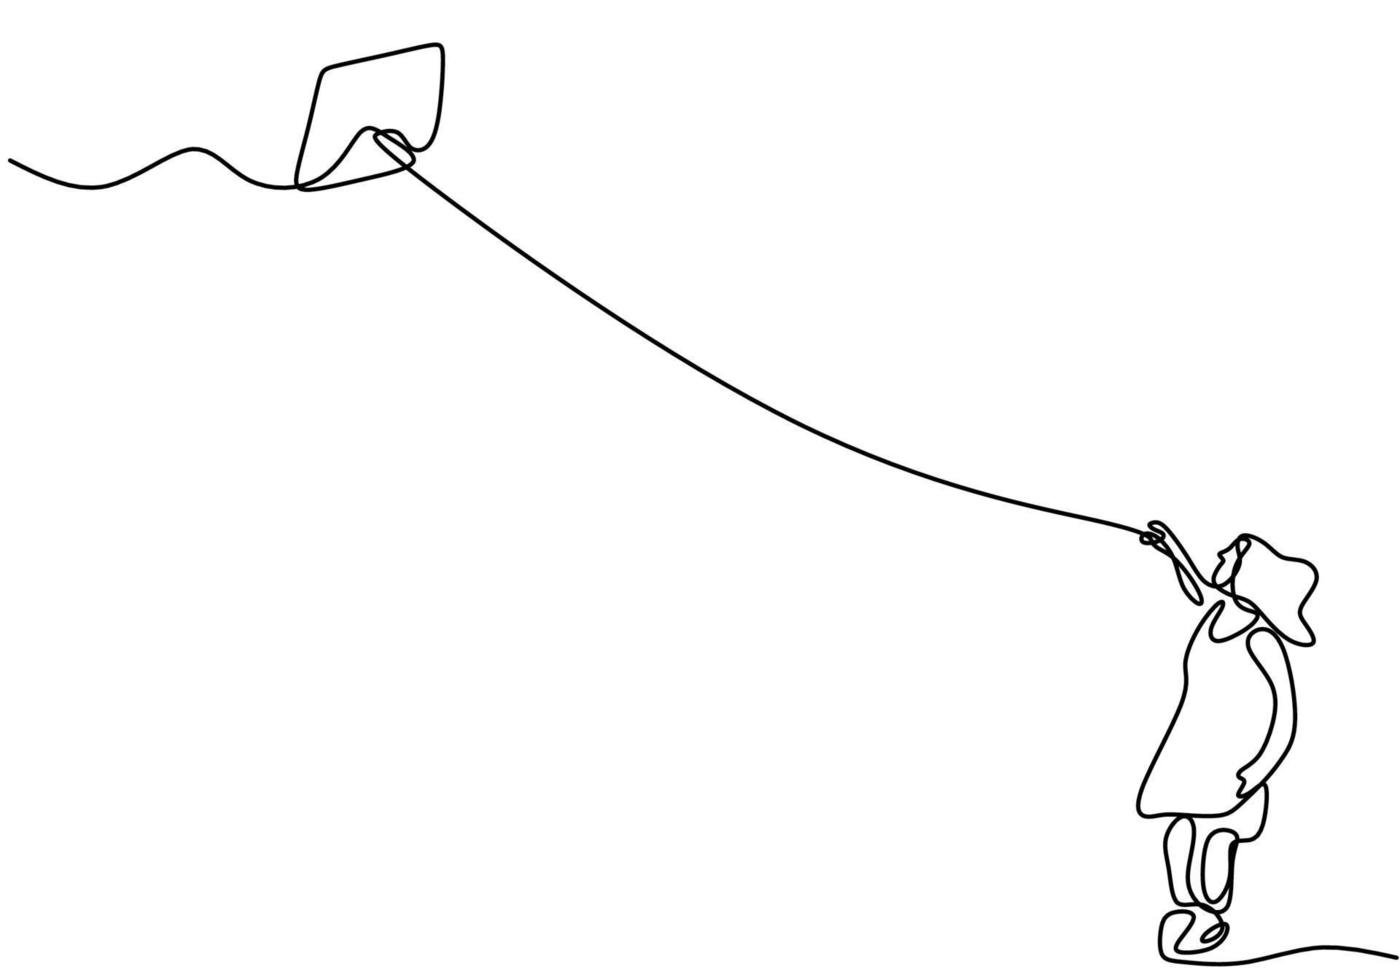 eine einzelne Strichzeichnung eines niedlichen Jungen, der einen Ballon hält. glückliches kleines Kind, das Luftballon im Spielplatz spielt, während gezeichnete Strichgrafiken der Sprunghand auf weißem Hintergrund Vektorillustration vektor